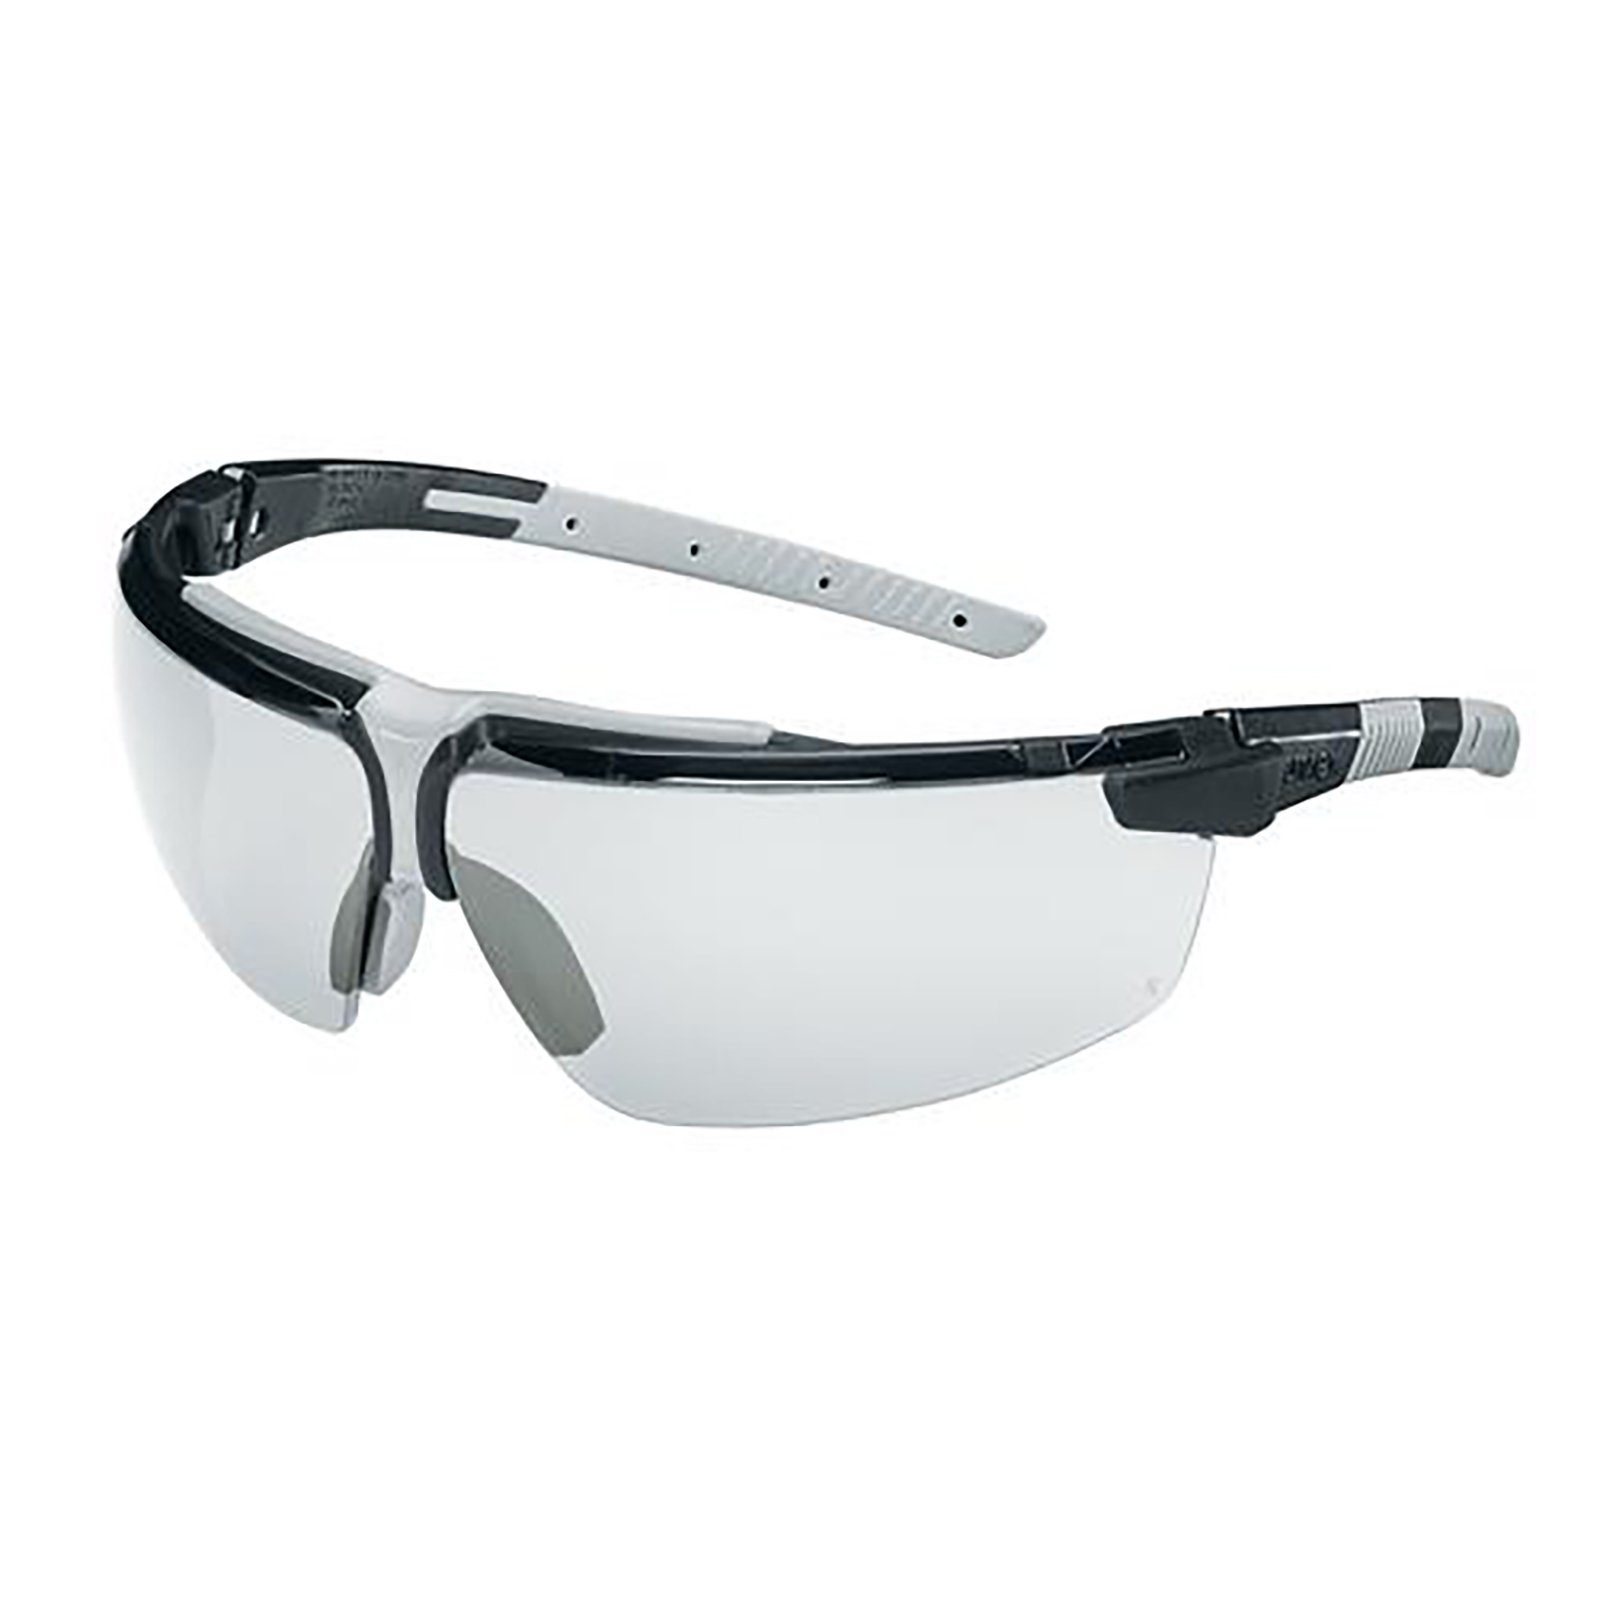 Arbeitsschutzbrille sv Uvex 9190080 plus Bügelbrille i-3 s